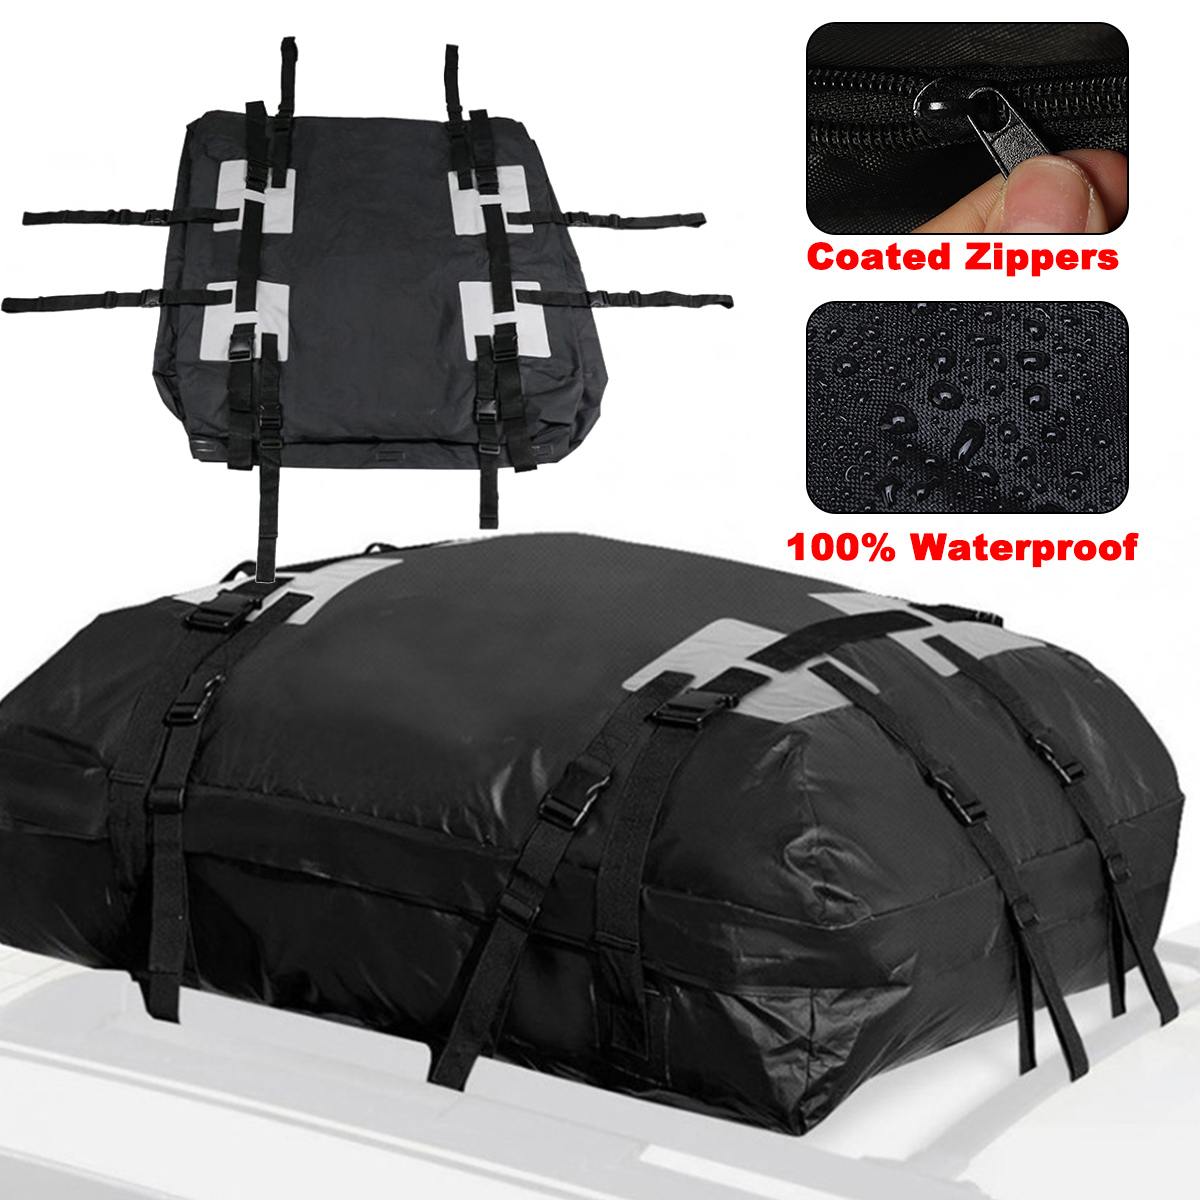 High Quality 109x86x43cm Waterproof Car Cargo Roof Bag Waterproof Rooftop Luggage Carrier Black Storage Travel Waterproof SUV Van